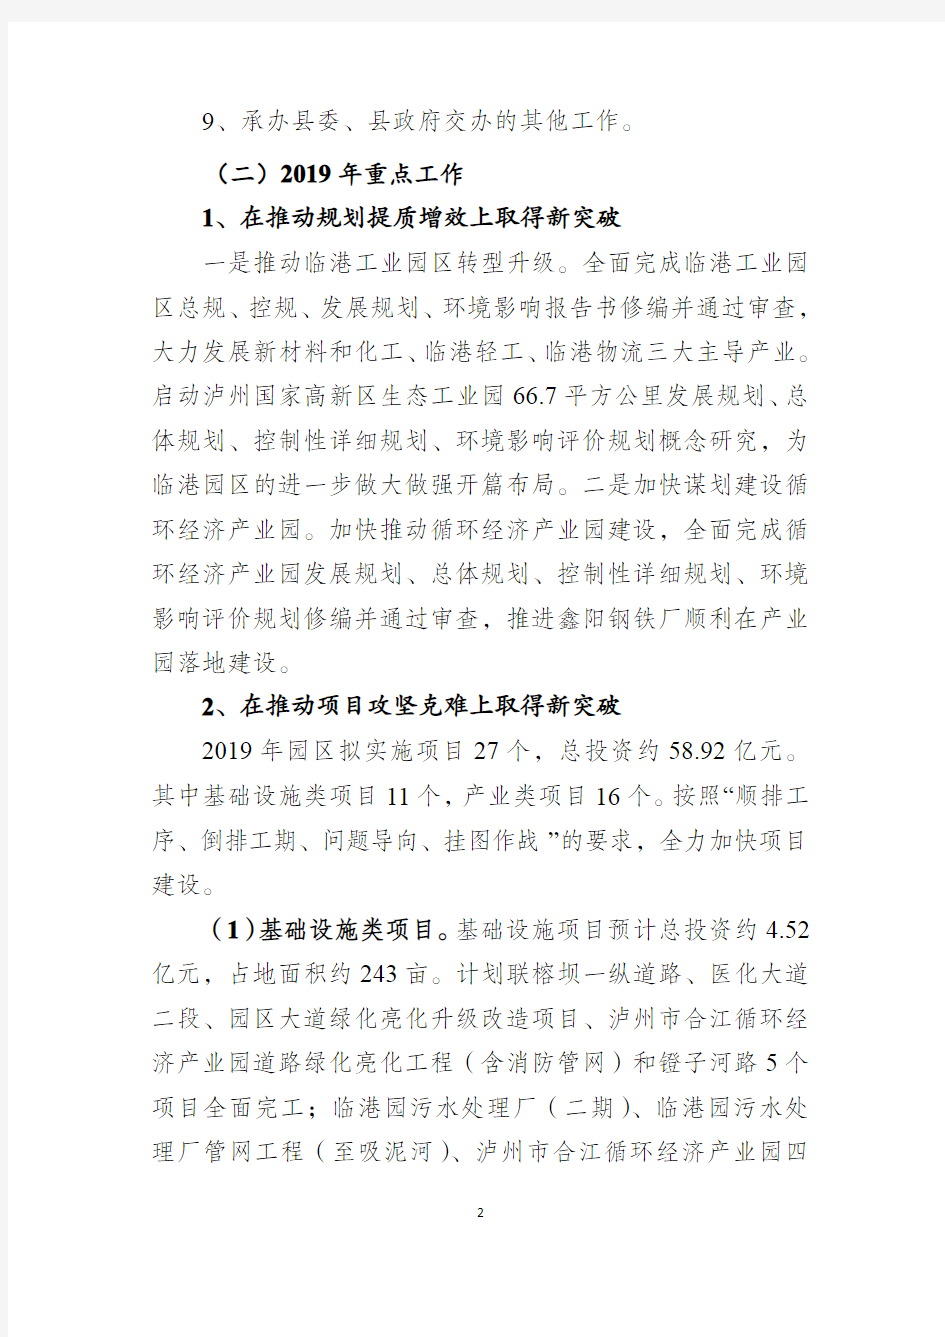 四川合江临港工业园区管理委员会2019年部门预算编制说明